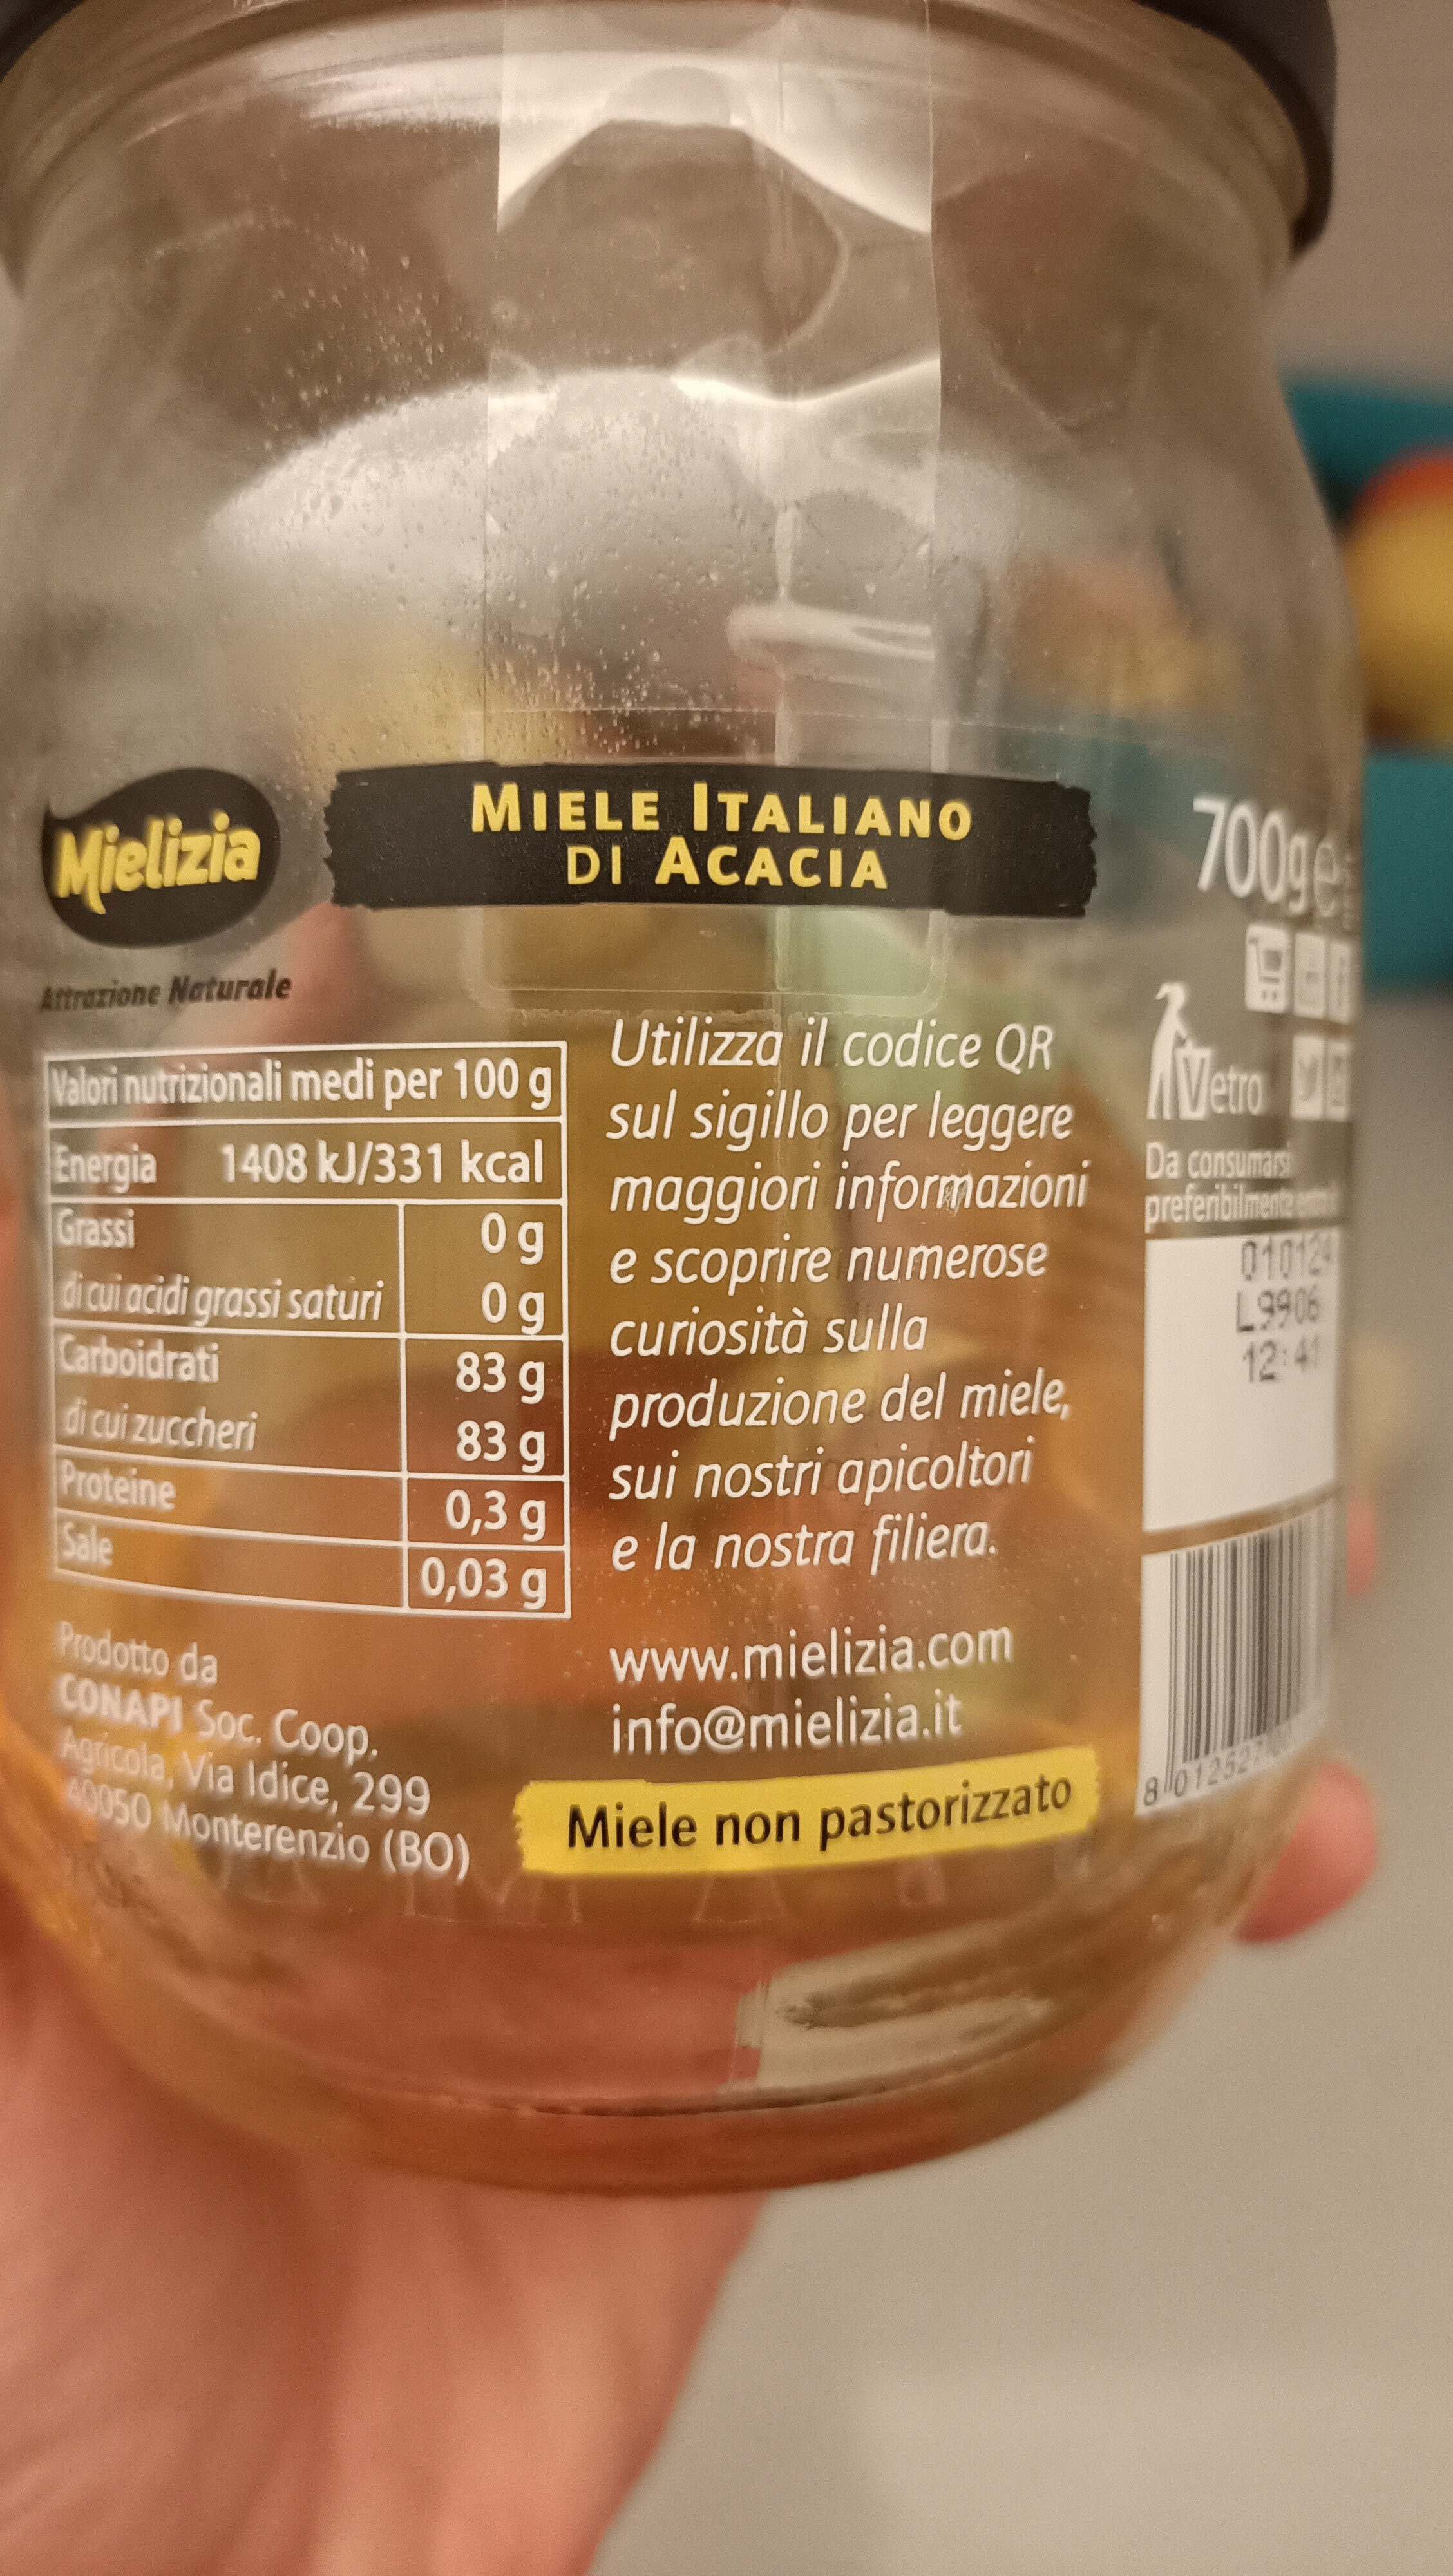 Miele italiano di acacia non pastorizzato - Ingredienti